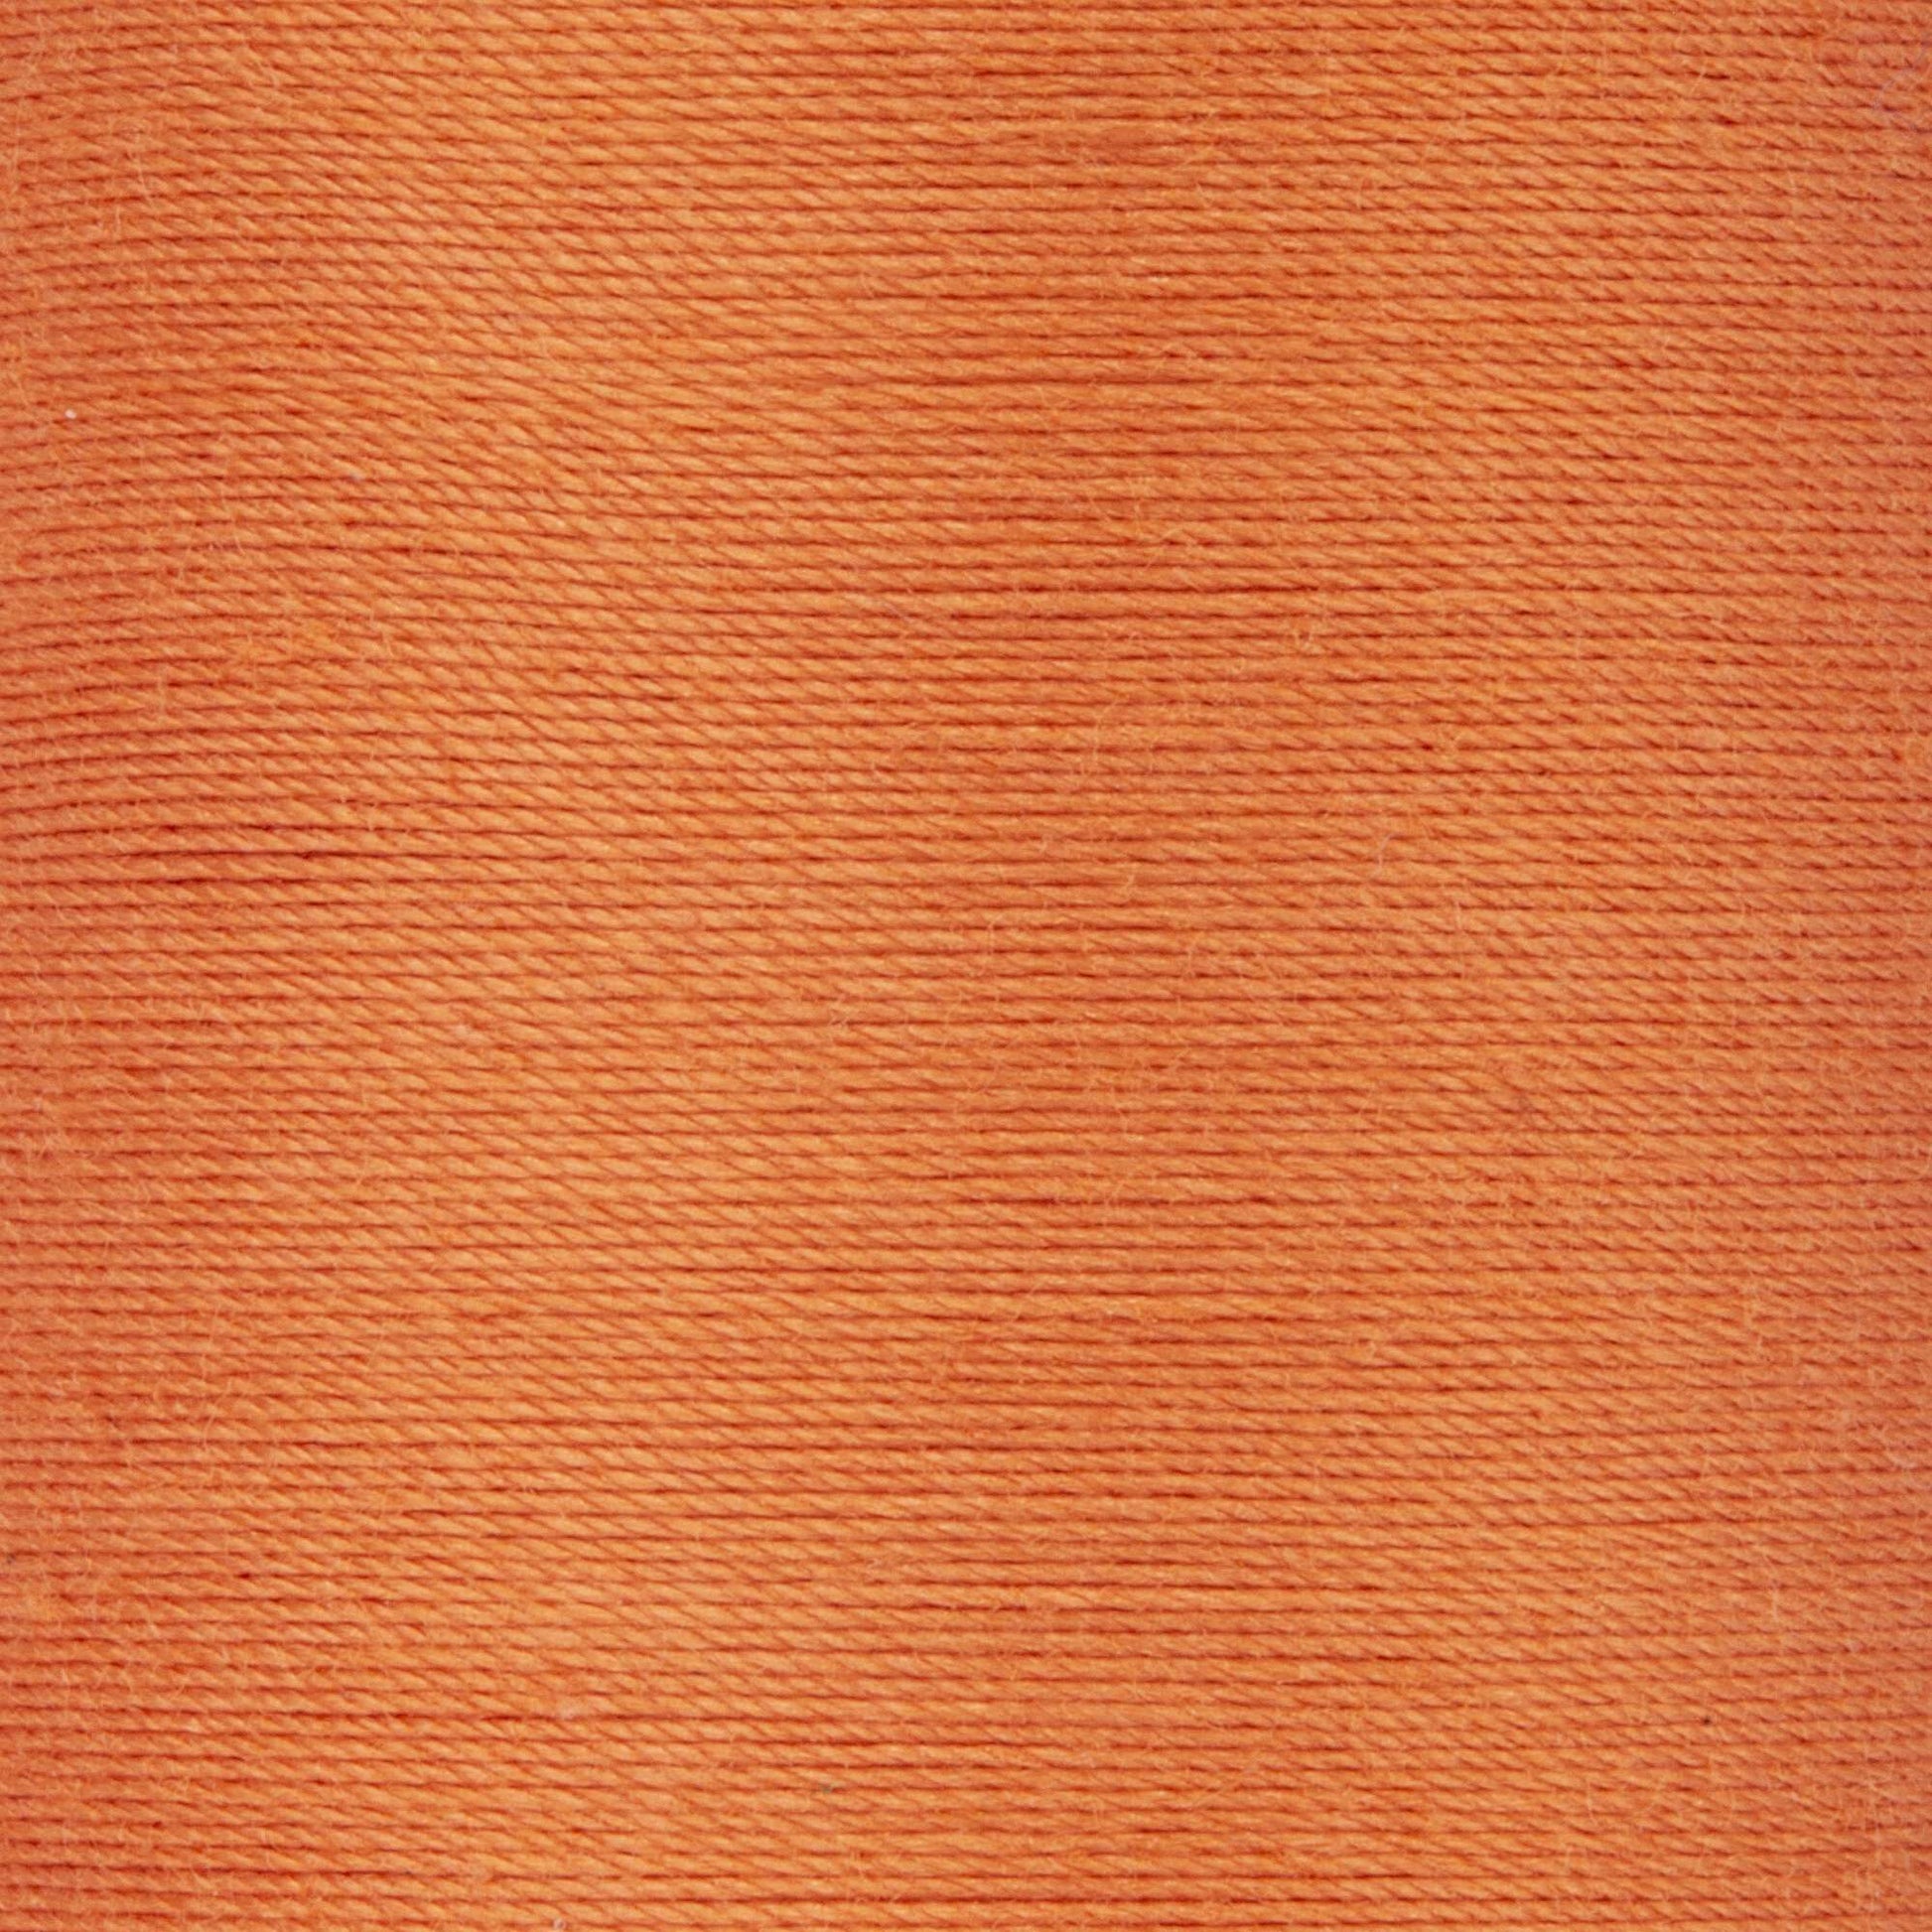 Coats & Clark Cotton Machine Quilting Thread (350 Yards) Dark Orange